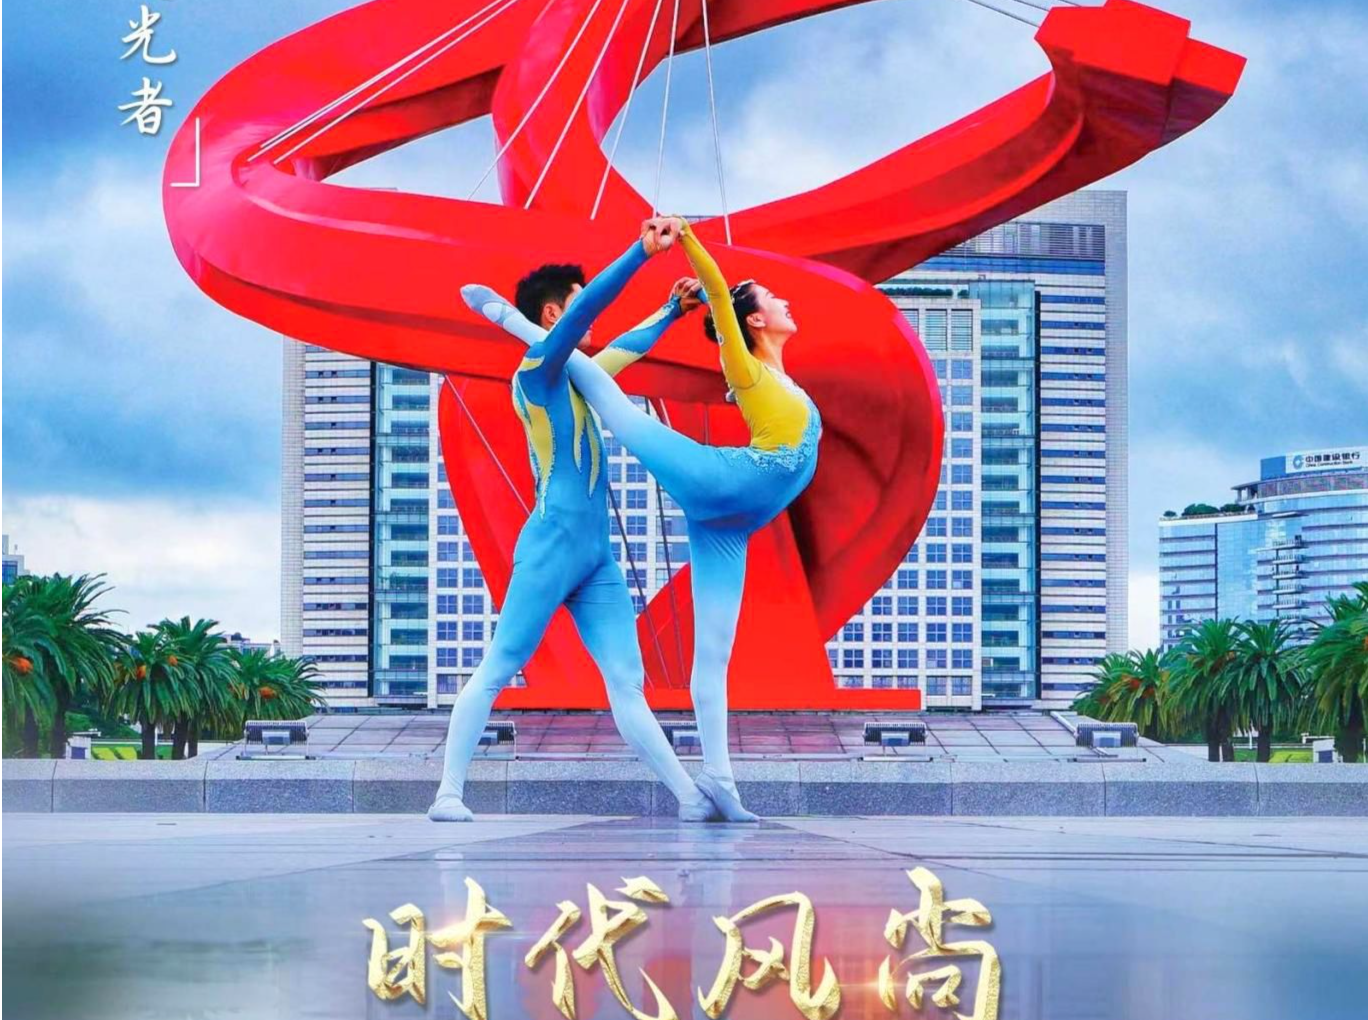 “时代风尚”——中国文艺志愿者致敬大国重器特别节目11月20日全国播出